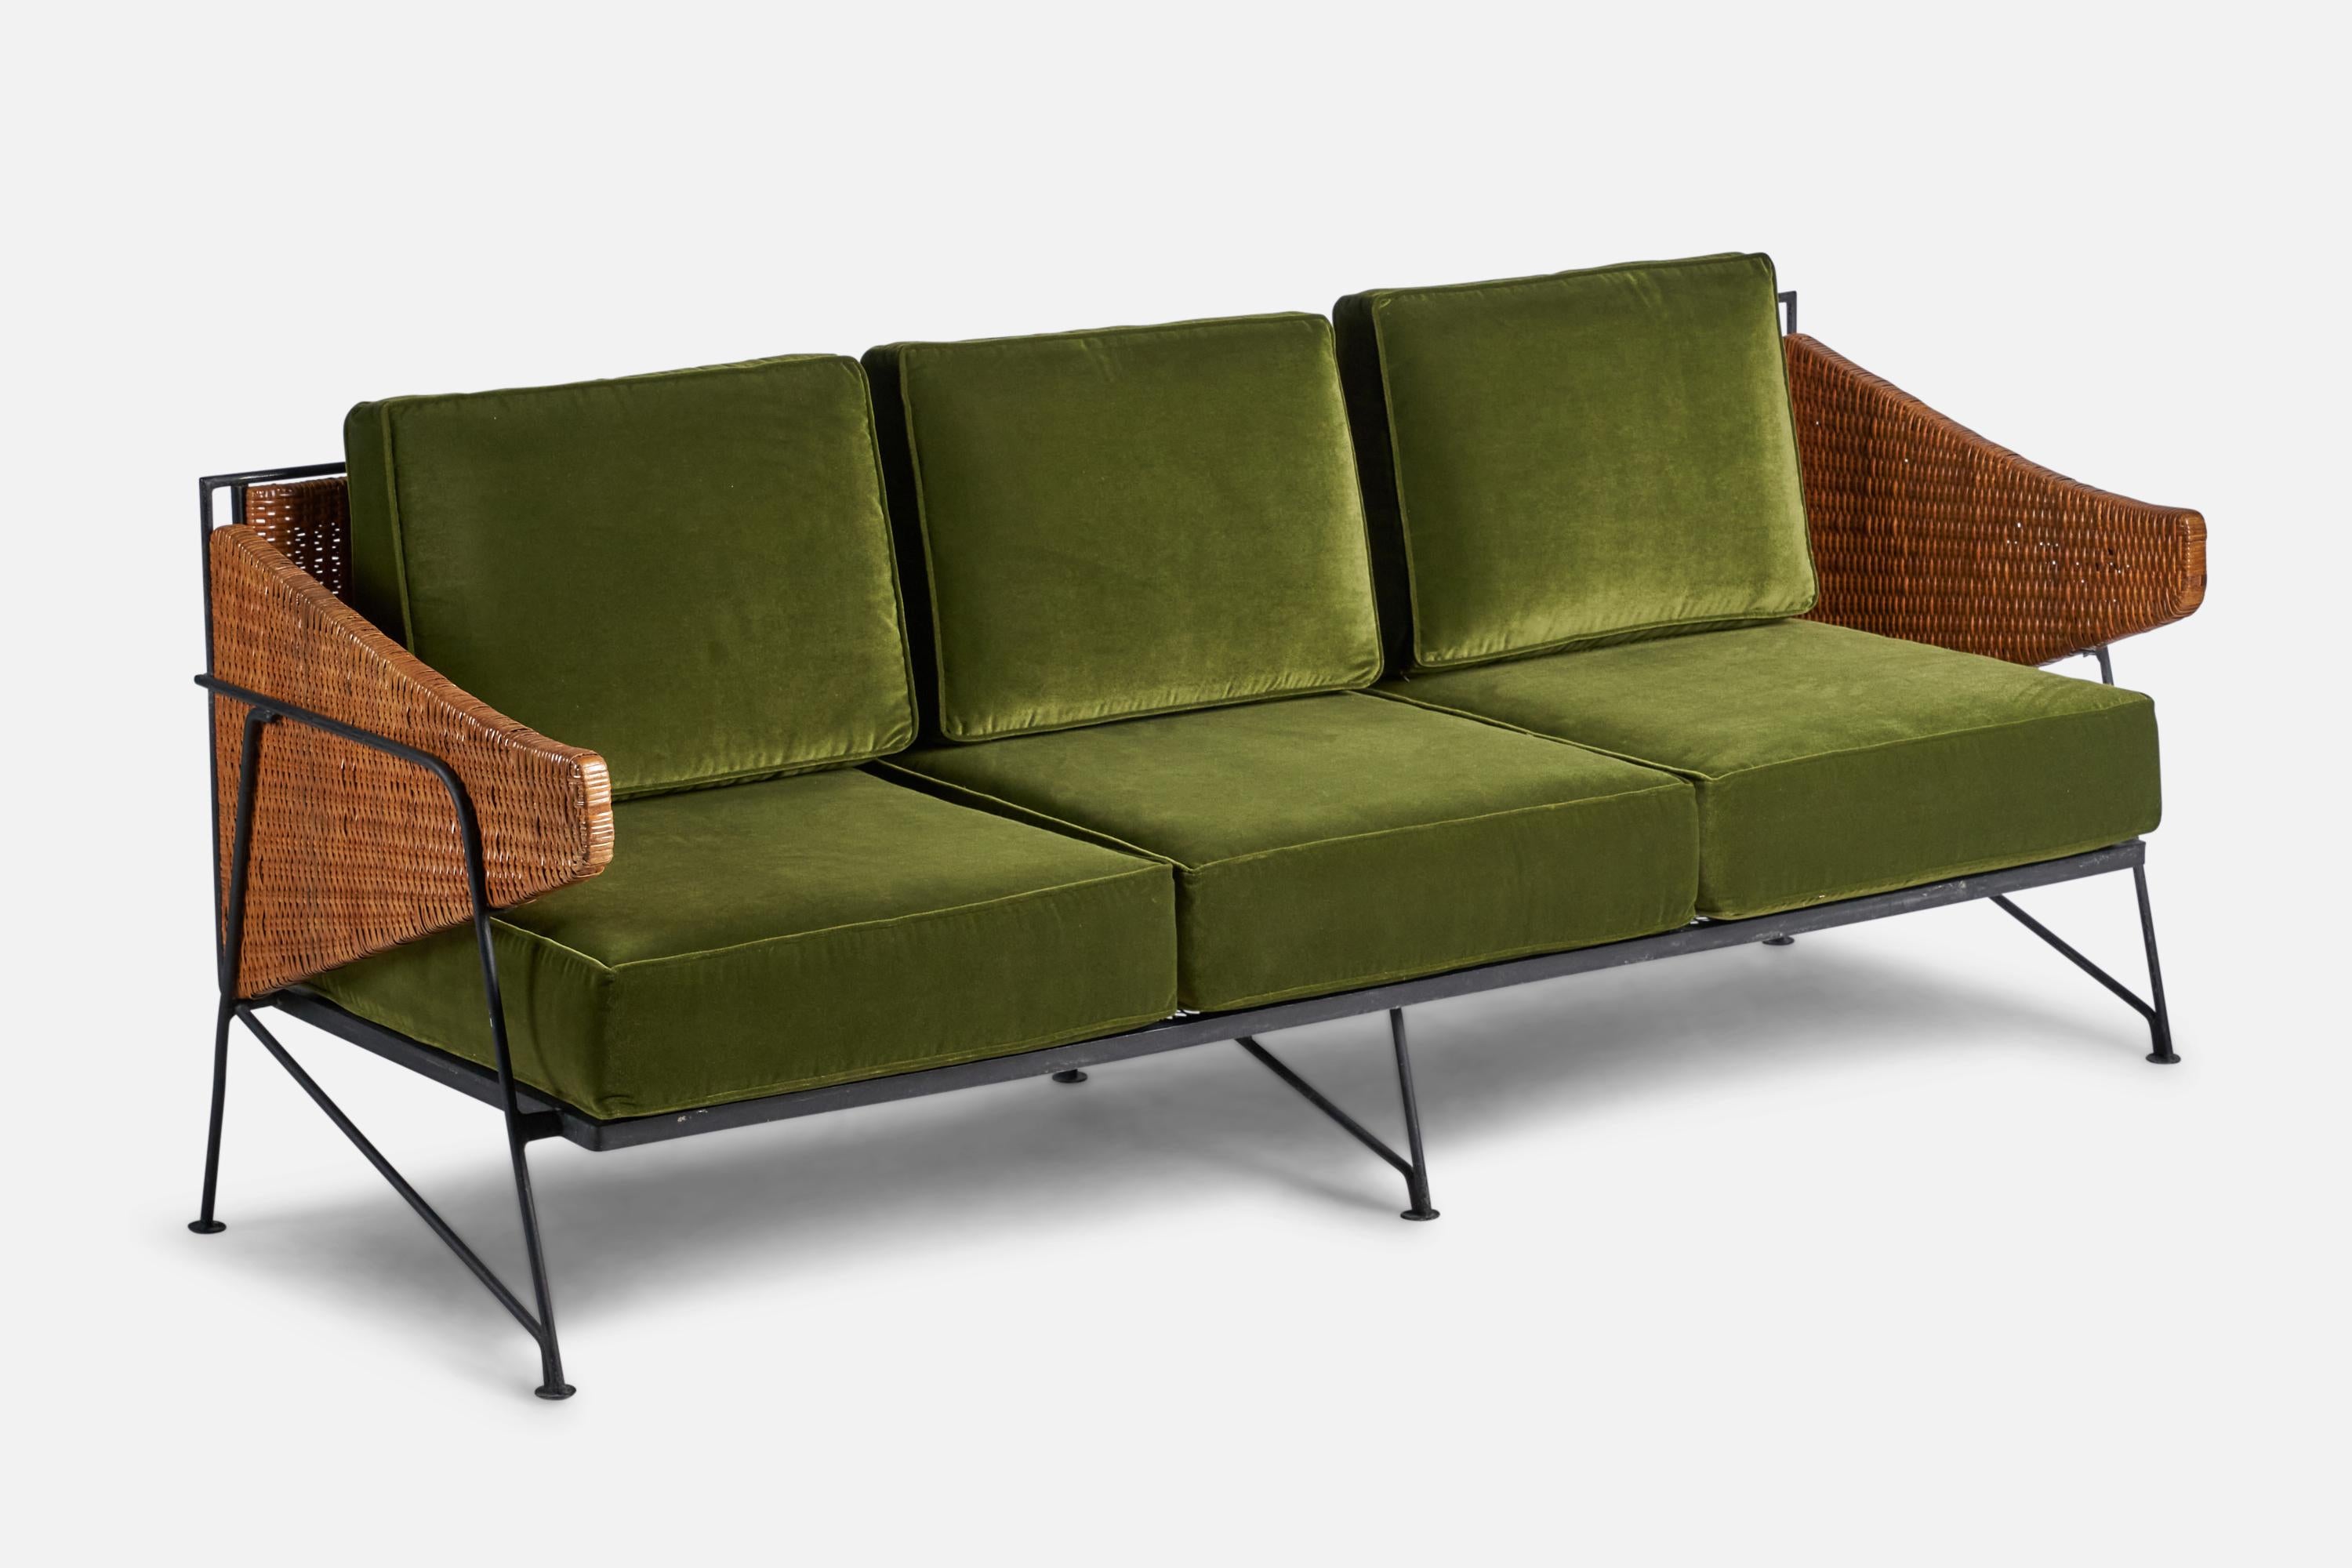 Ein Sofa aus schwarz lackiertem Eisen, Rattan und grünem Samt, entworfen und hergestellt in den USA, 1950. 

16,5